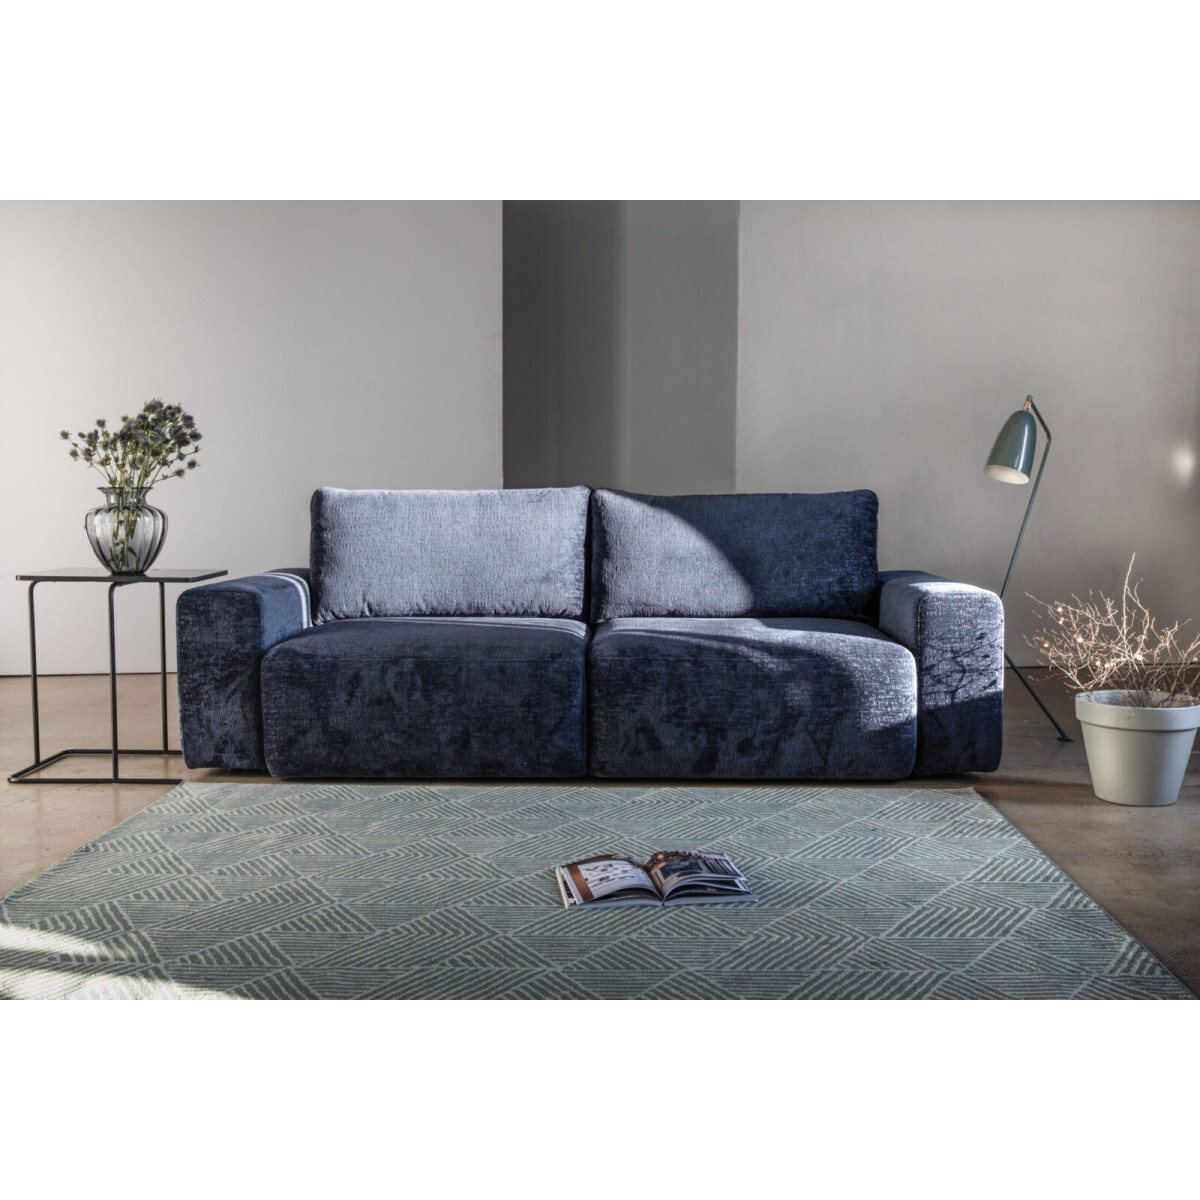 Нераскладные диваны - купить нераскладной диван по ценам от производителя в интернет-магазине